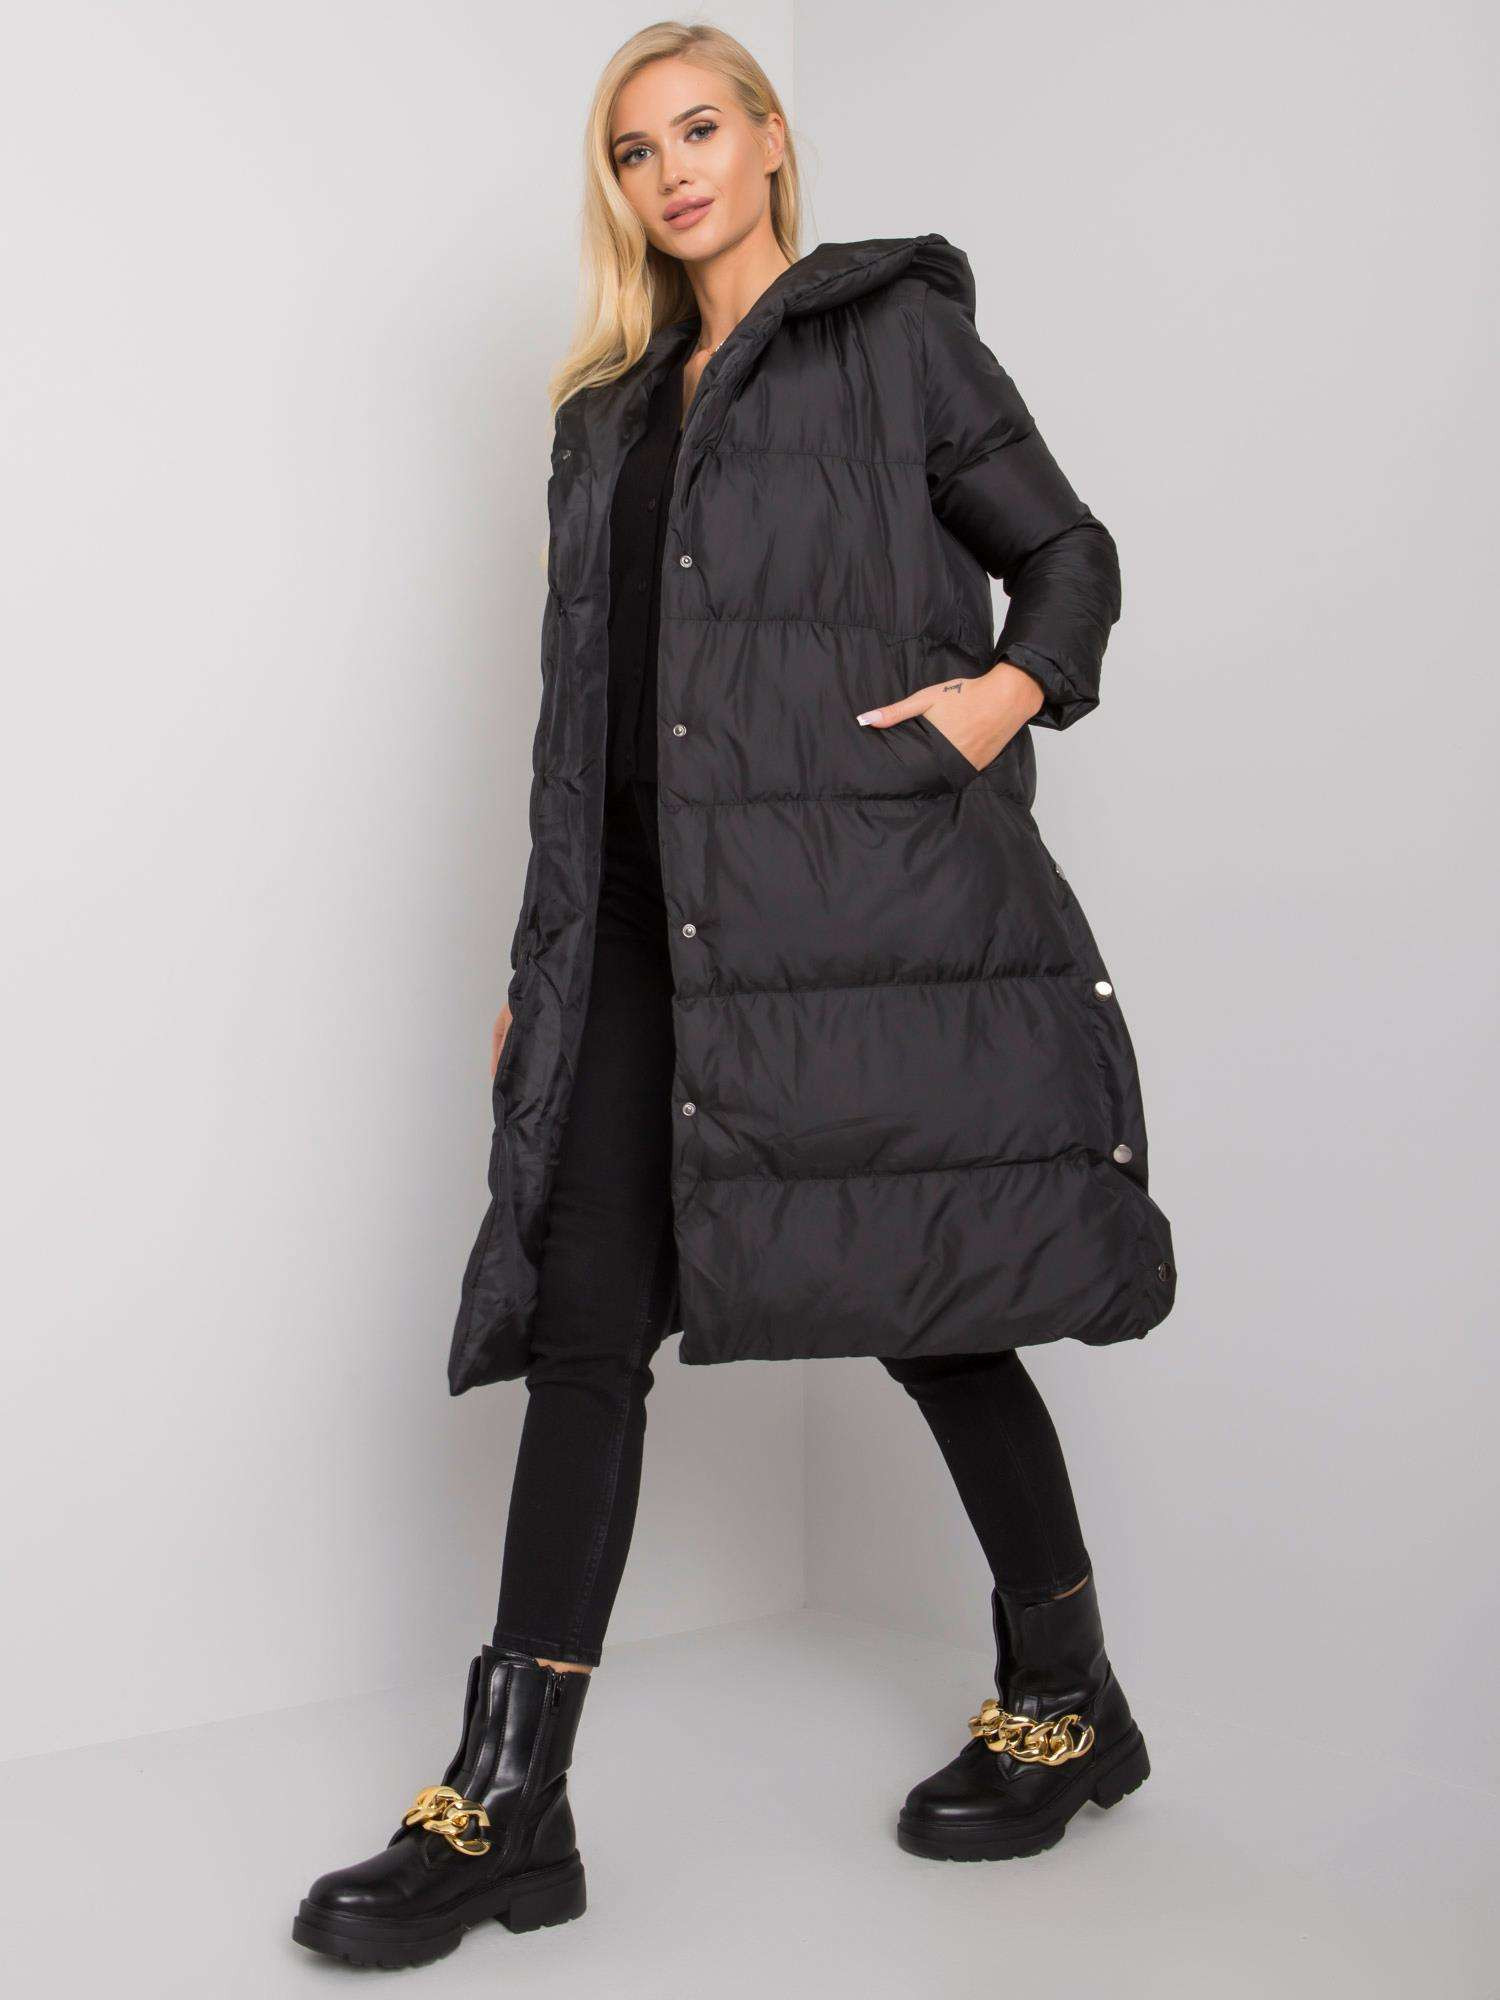 Dámský kabát LC KR model 15928119 černý S - FPrice